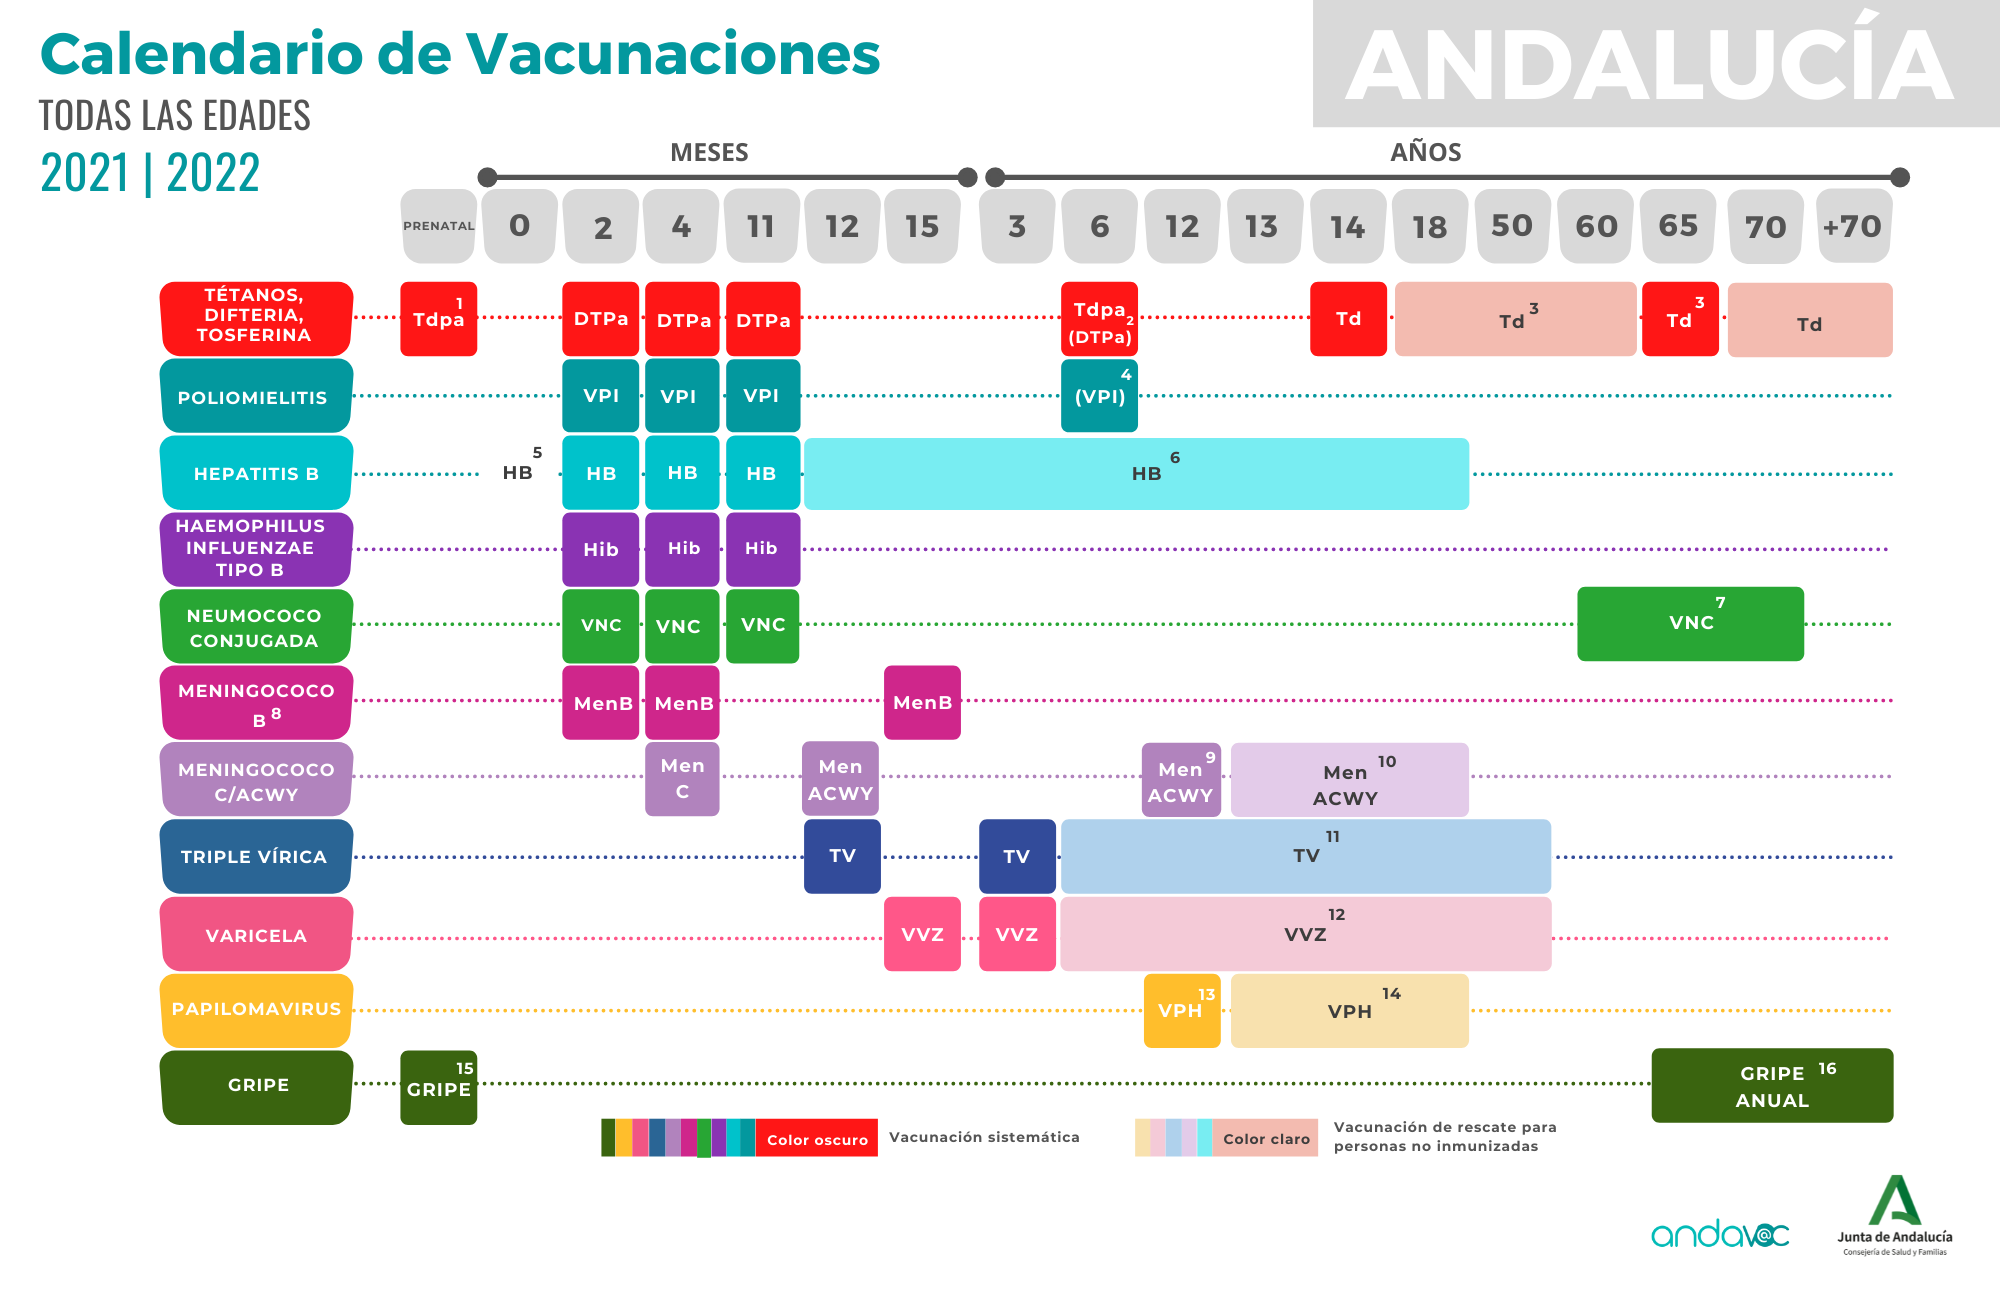 Calendario-Vacunaciones-2021-22-Andalucia-sin-notas